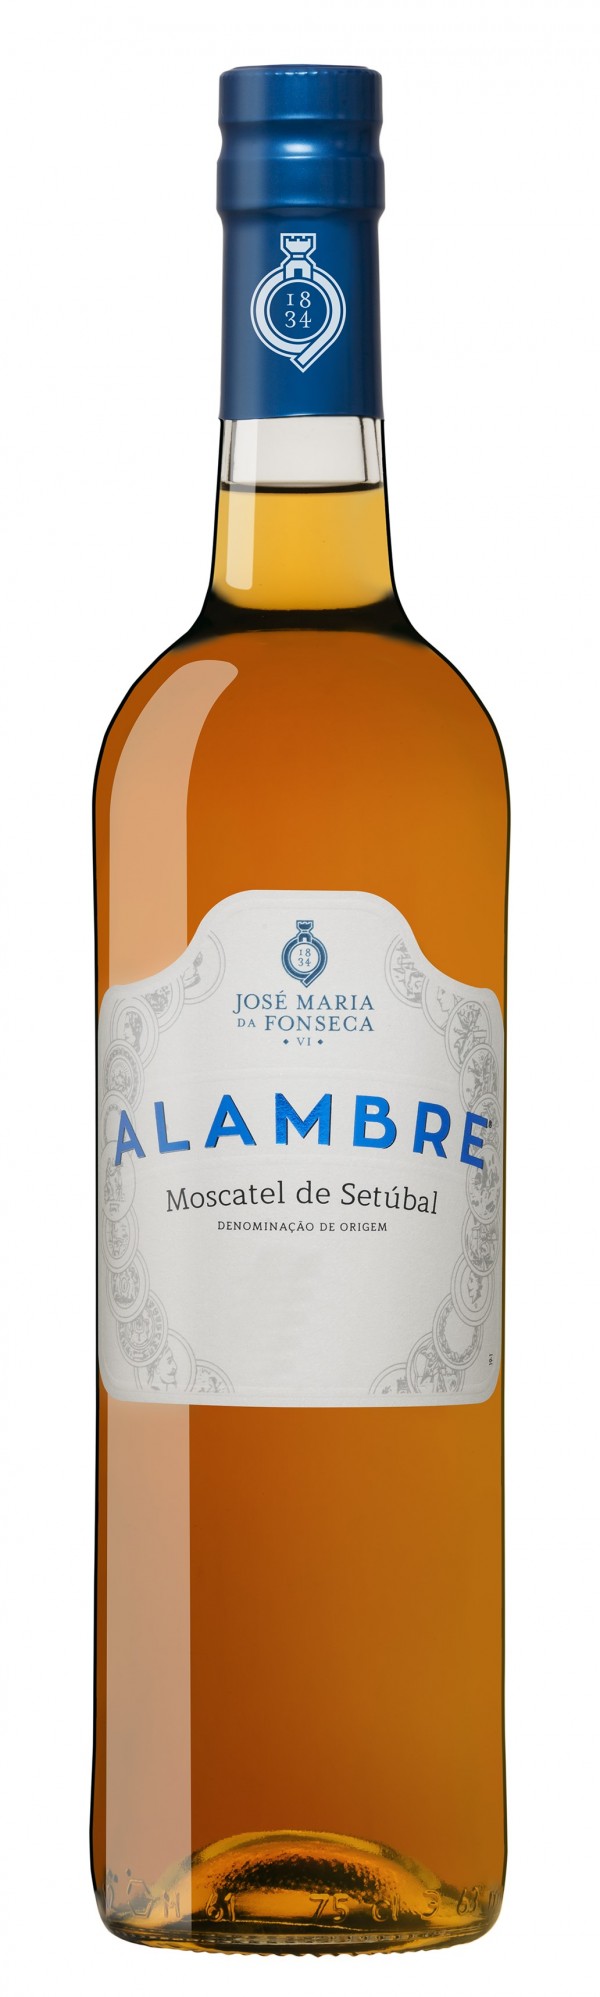 Portugalské fortifikované víno Moscatel Alambre na eshopu vína z Portugalska